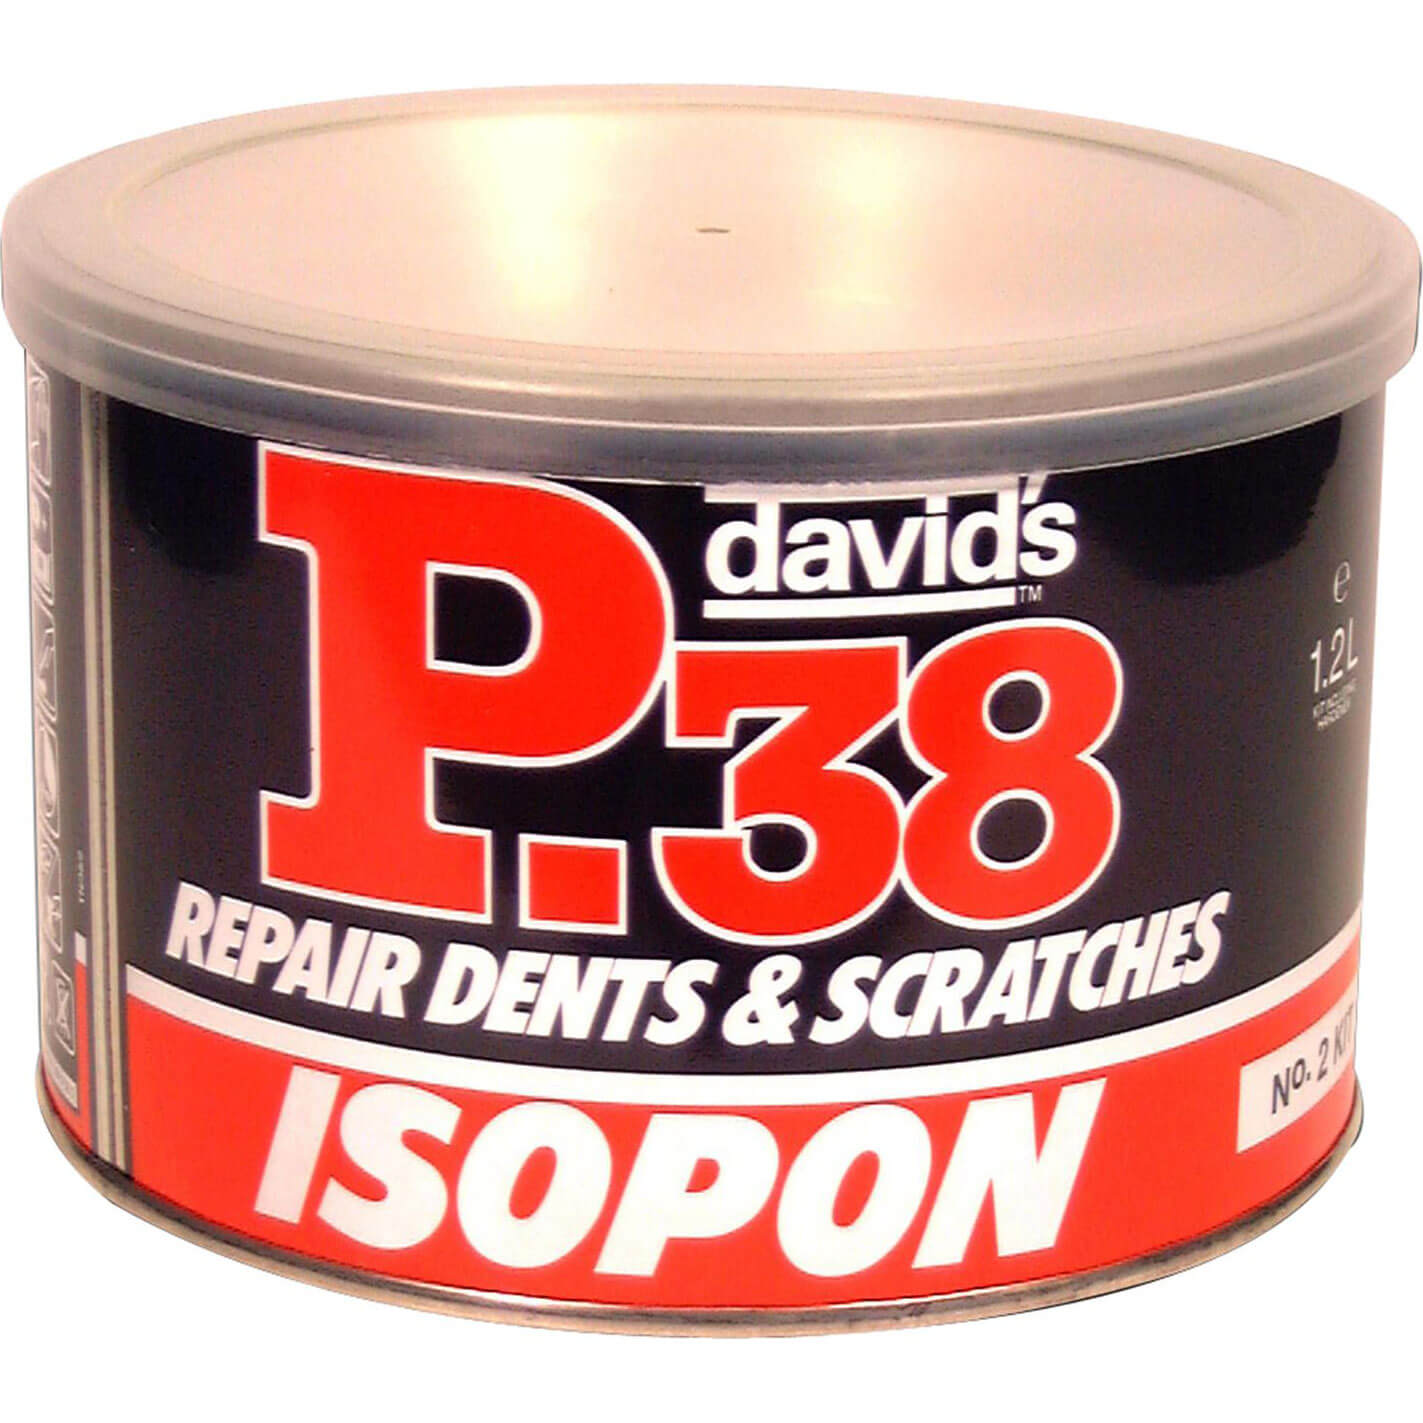 Image of UPO Isopon P38 Easy Sanding Body Filler 1.2l